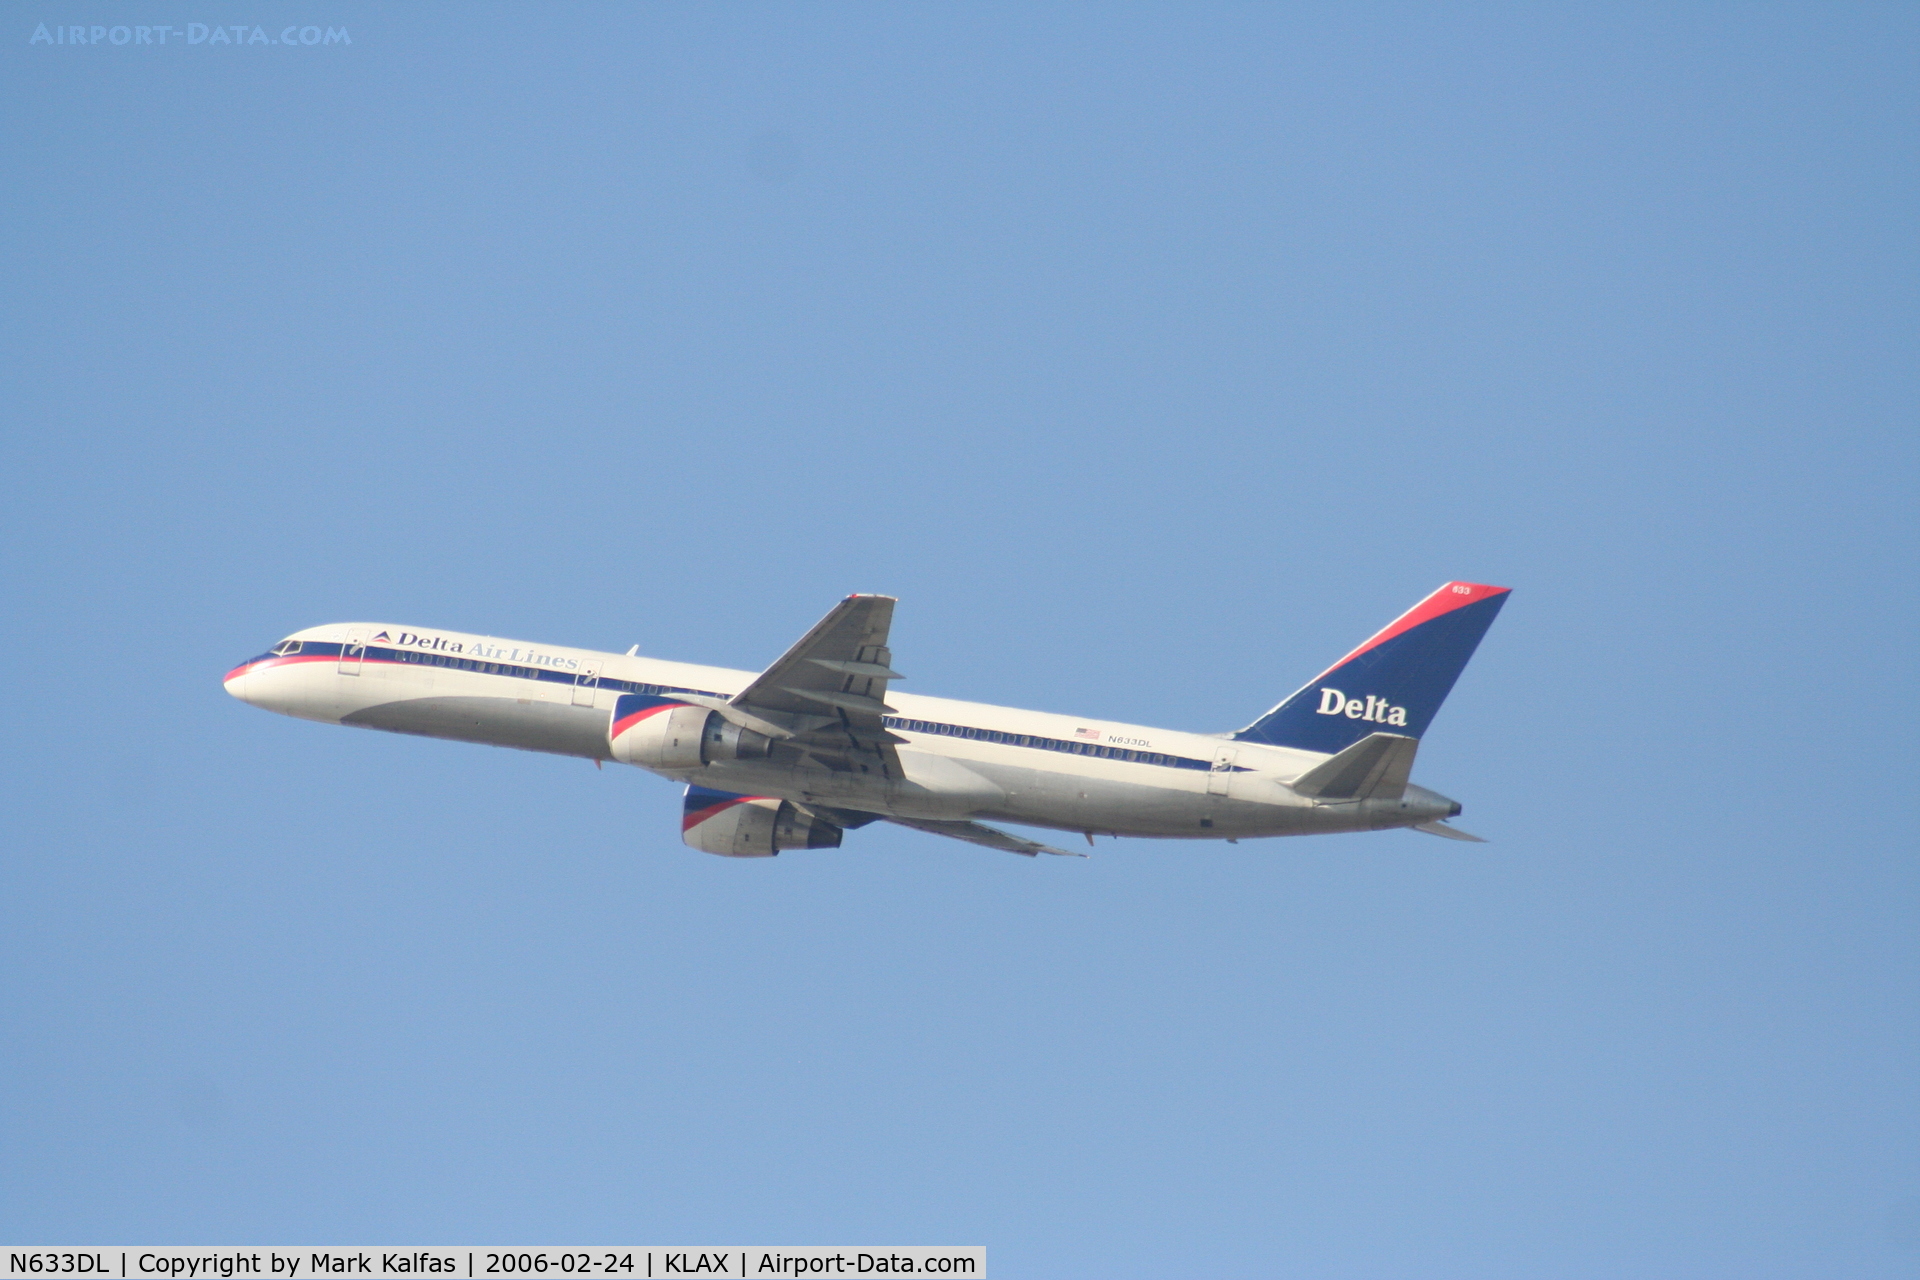 N633DL, 1987 Boeing 757-232 C/N 23614, Delta  Boeing 757-232, N633DL departs 25L KLAX